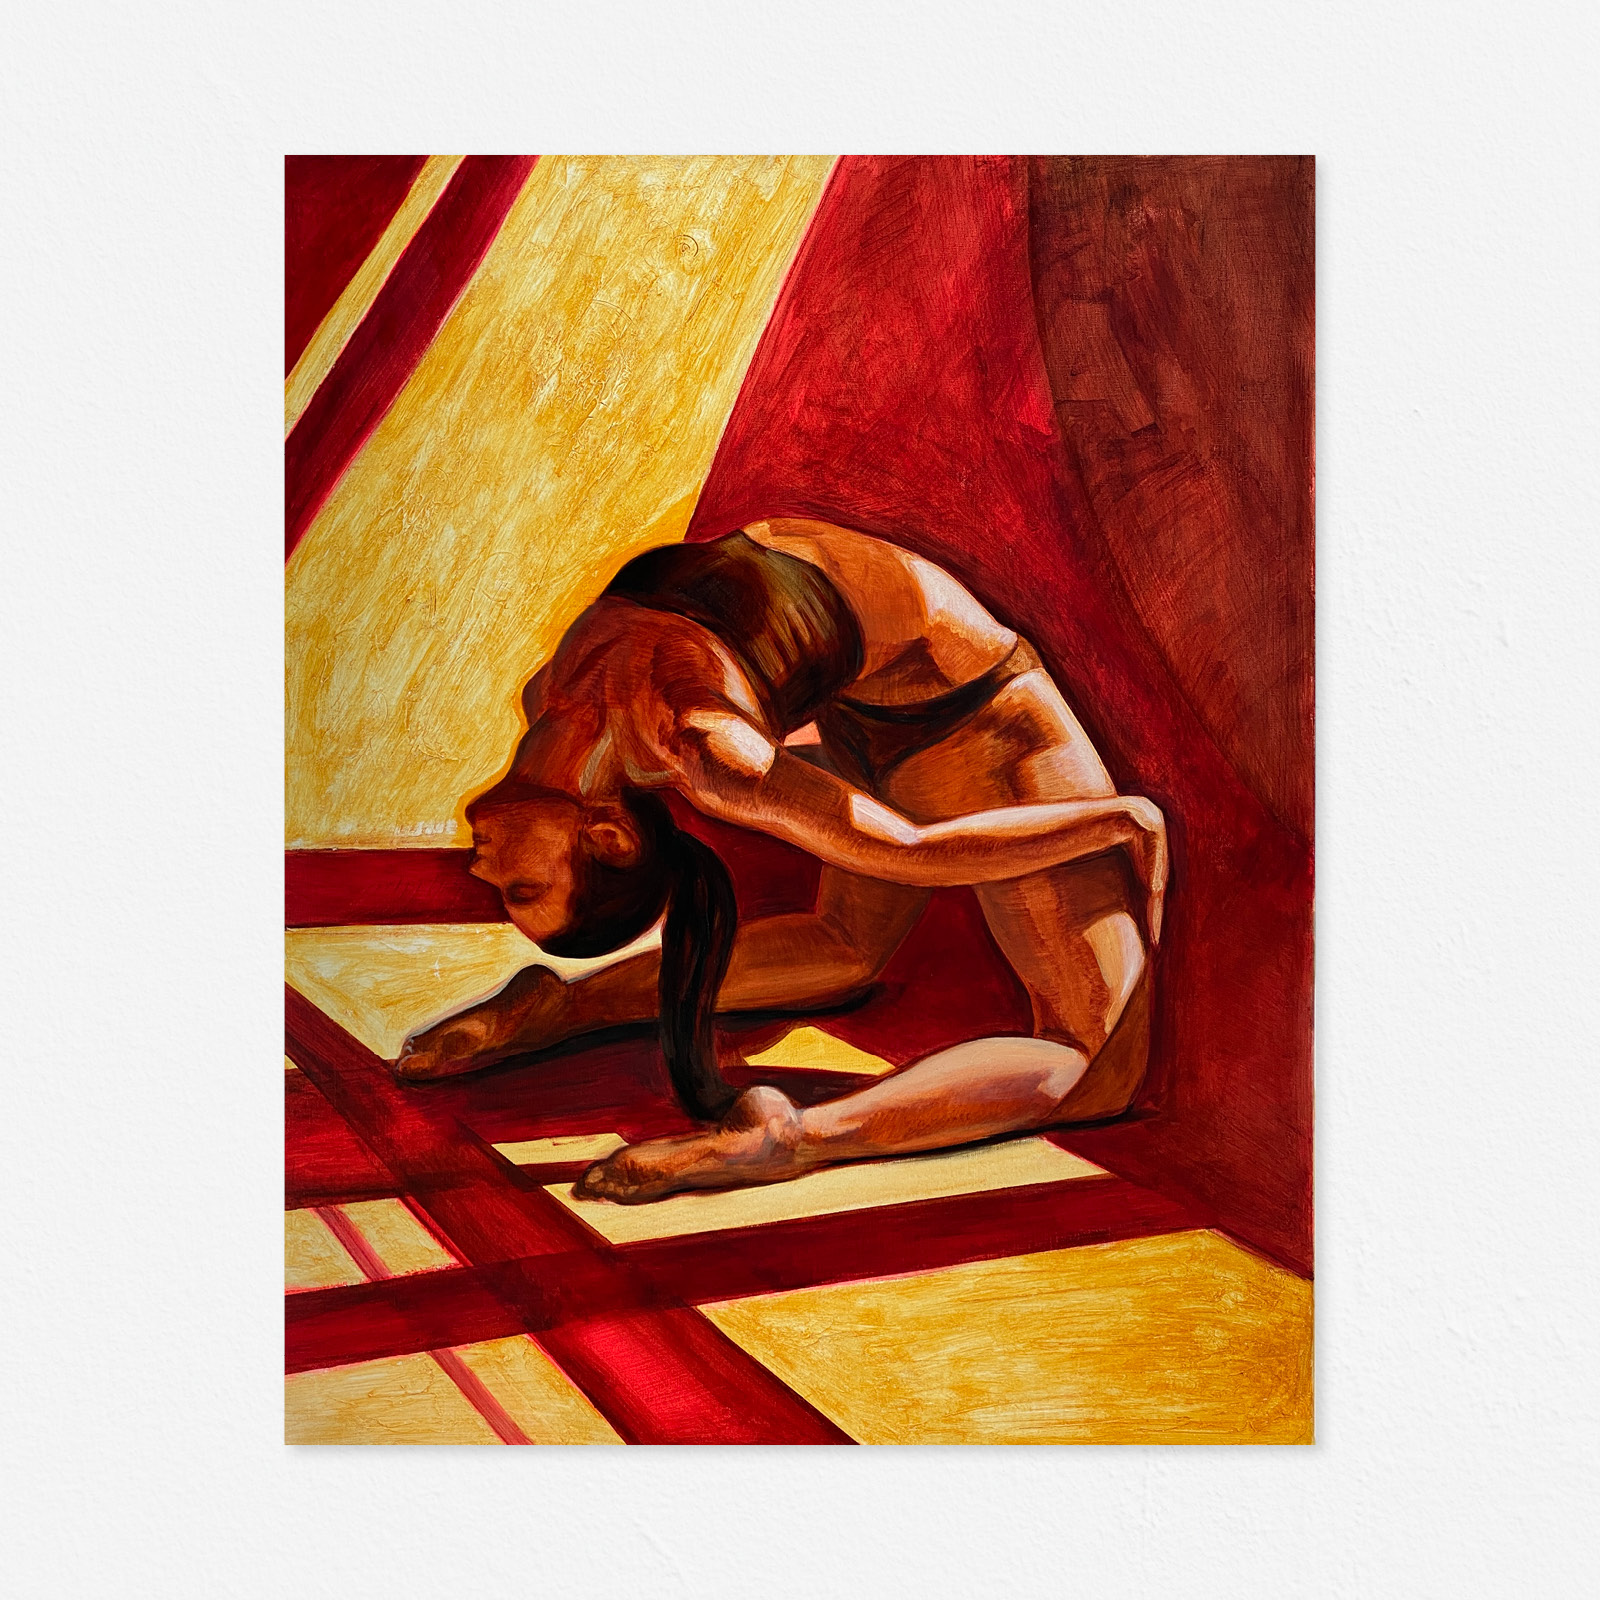 Anastasia Markovskaya, "Light Flow", 80x90x4, oil on canvas, 2022